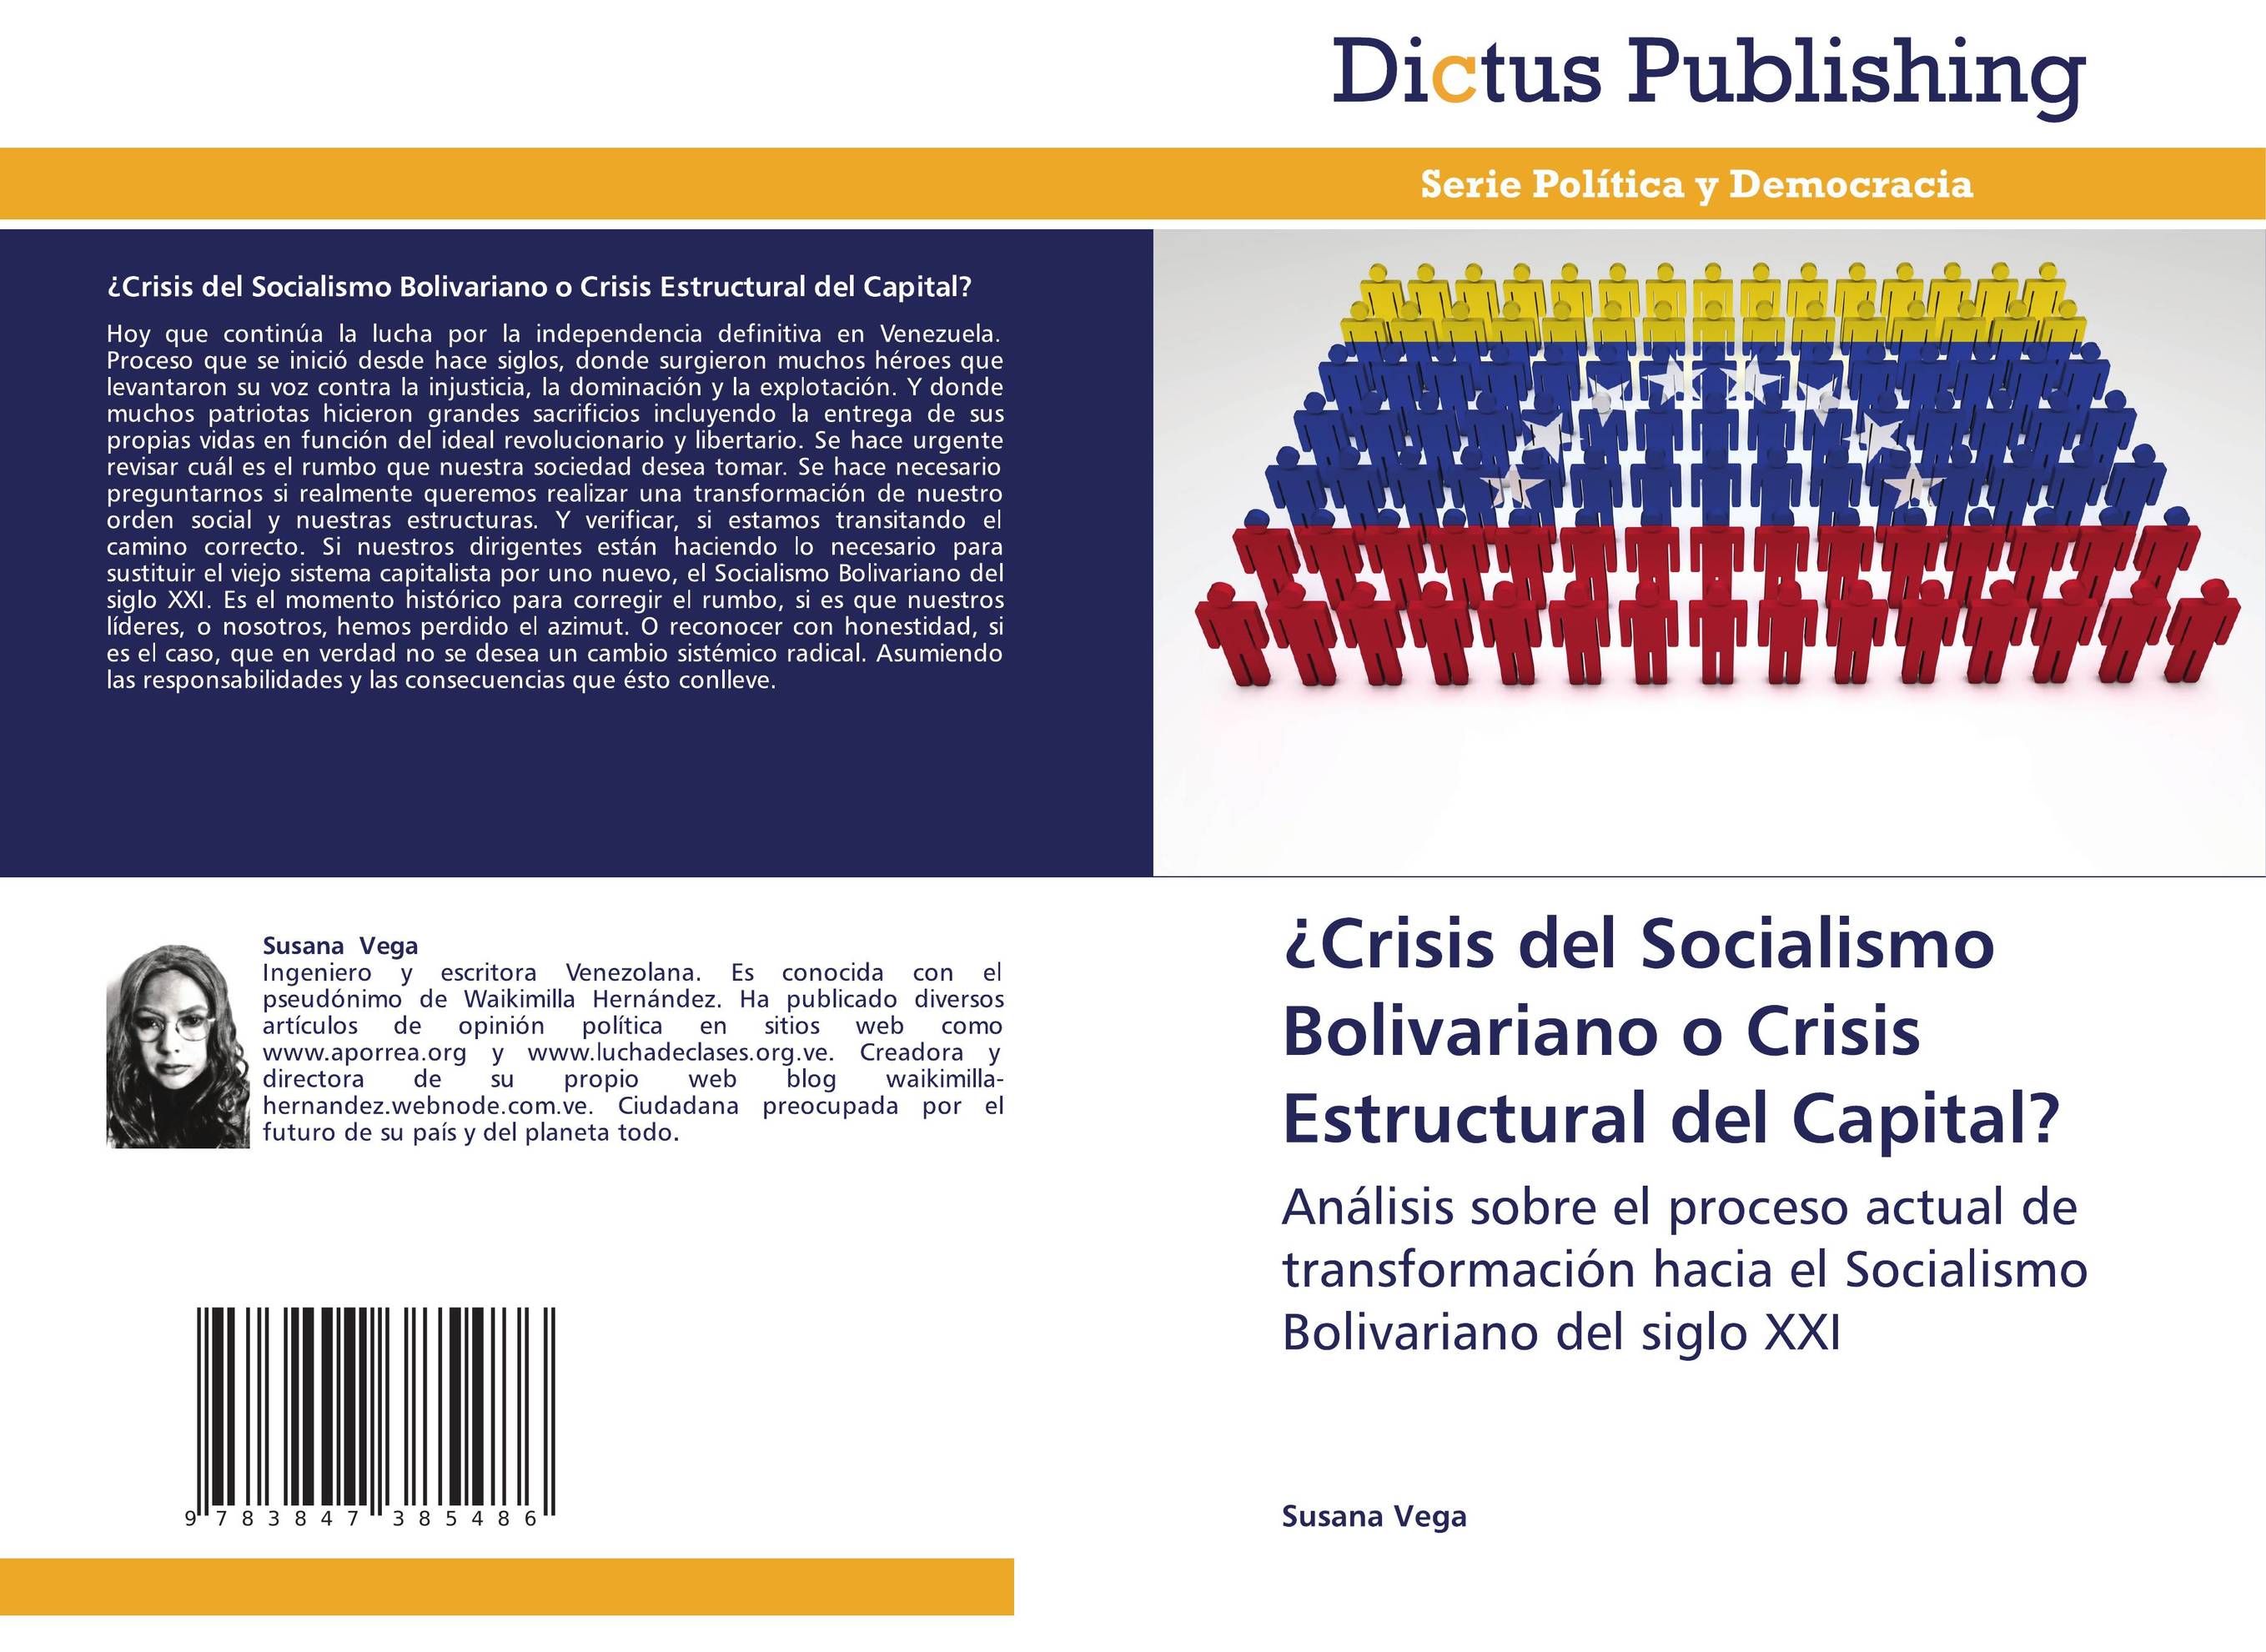 ¿Crisis del Socialismo Bolivariano o Crisis Estructural del Capital?